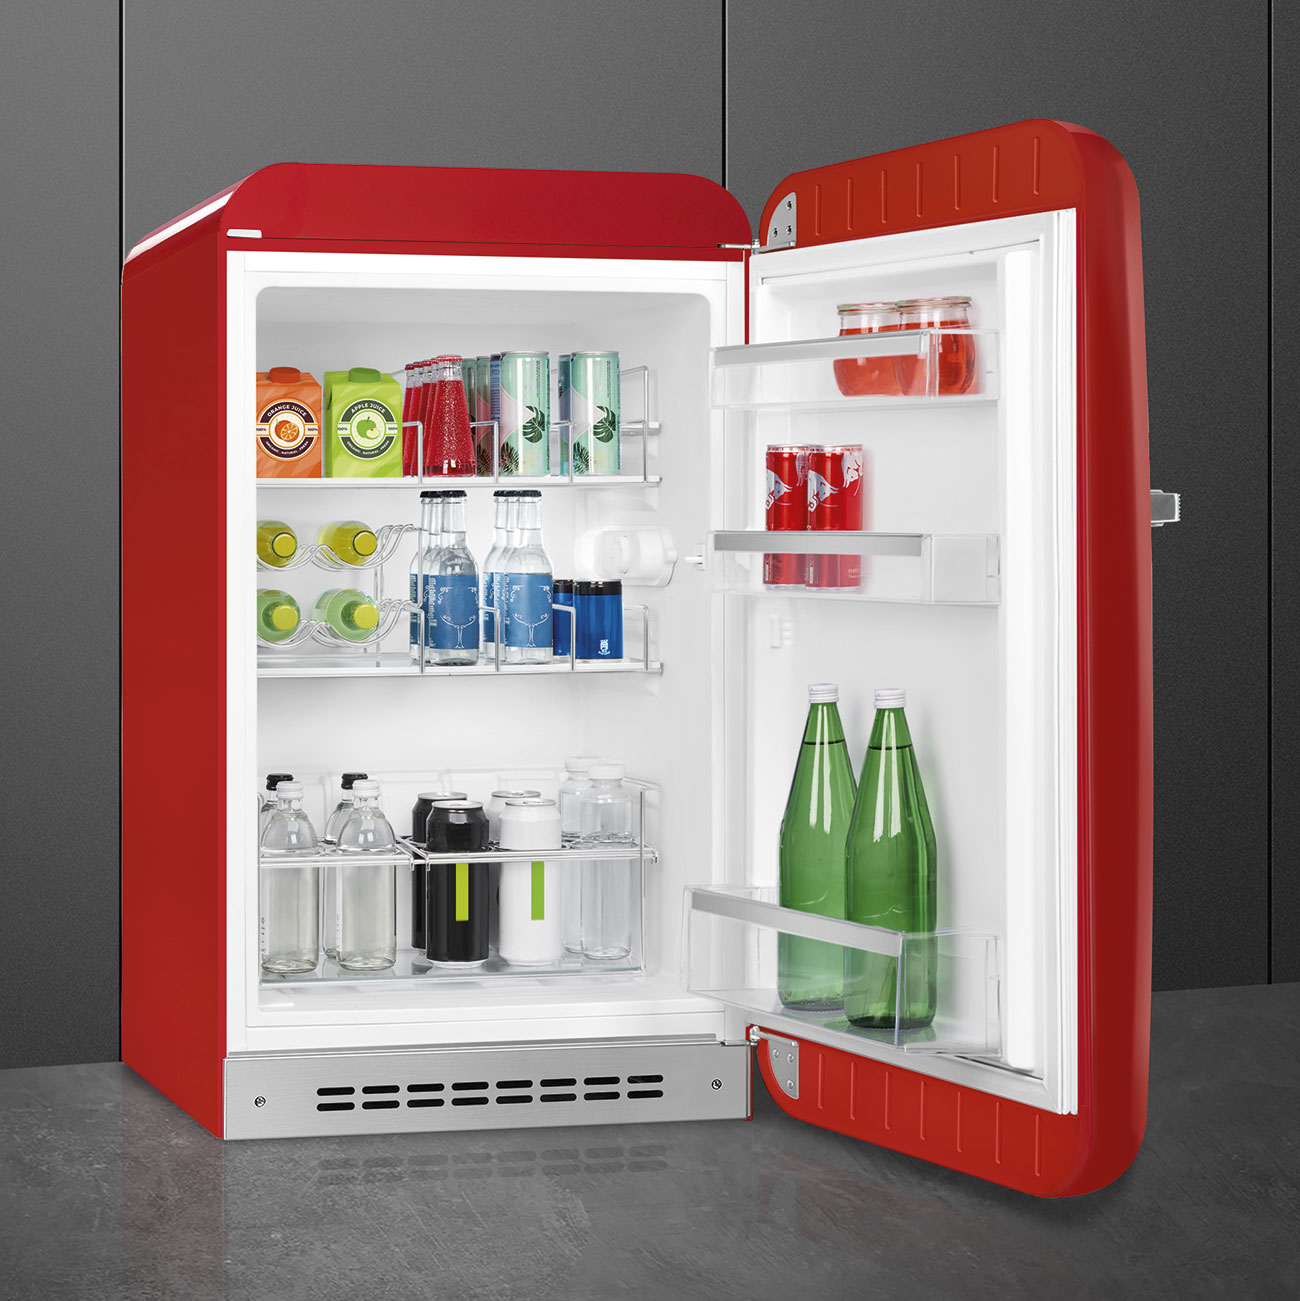 Red refrigerator - Smeg_10